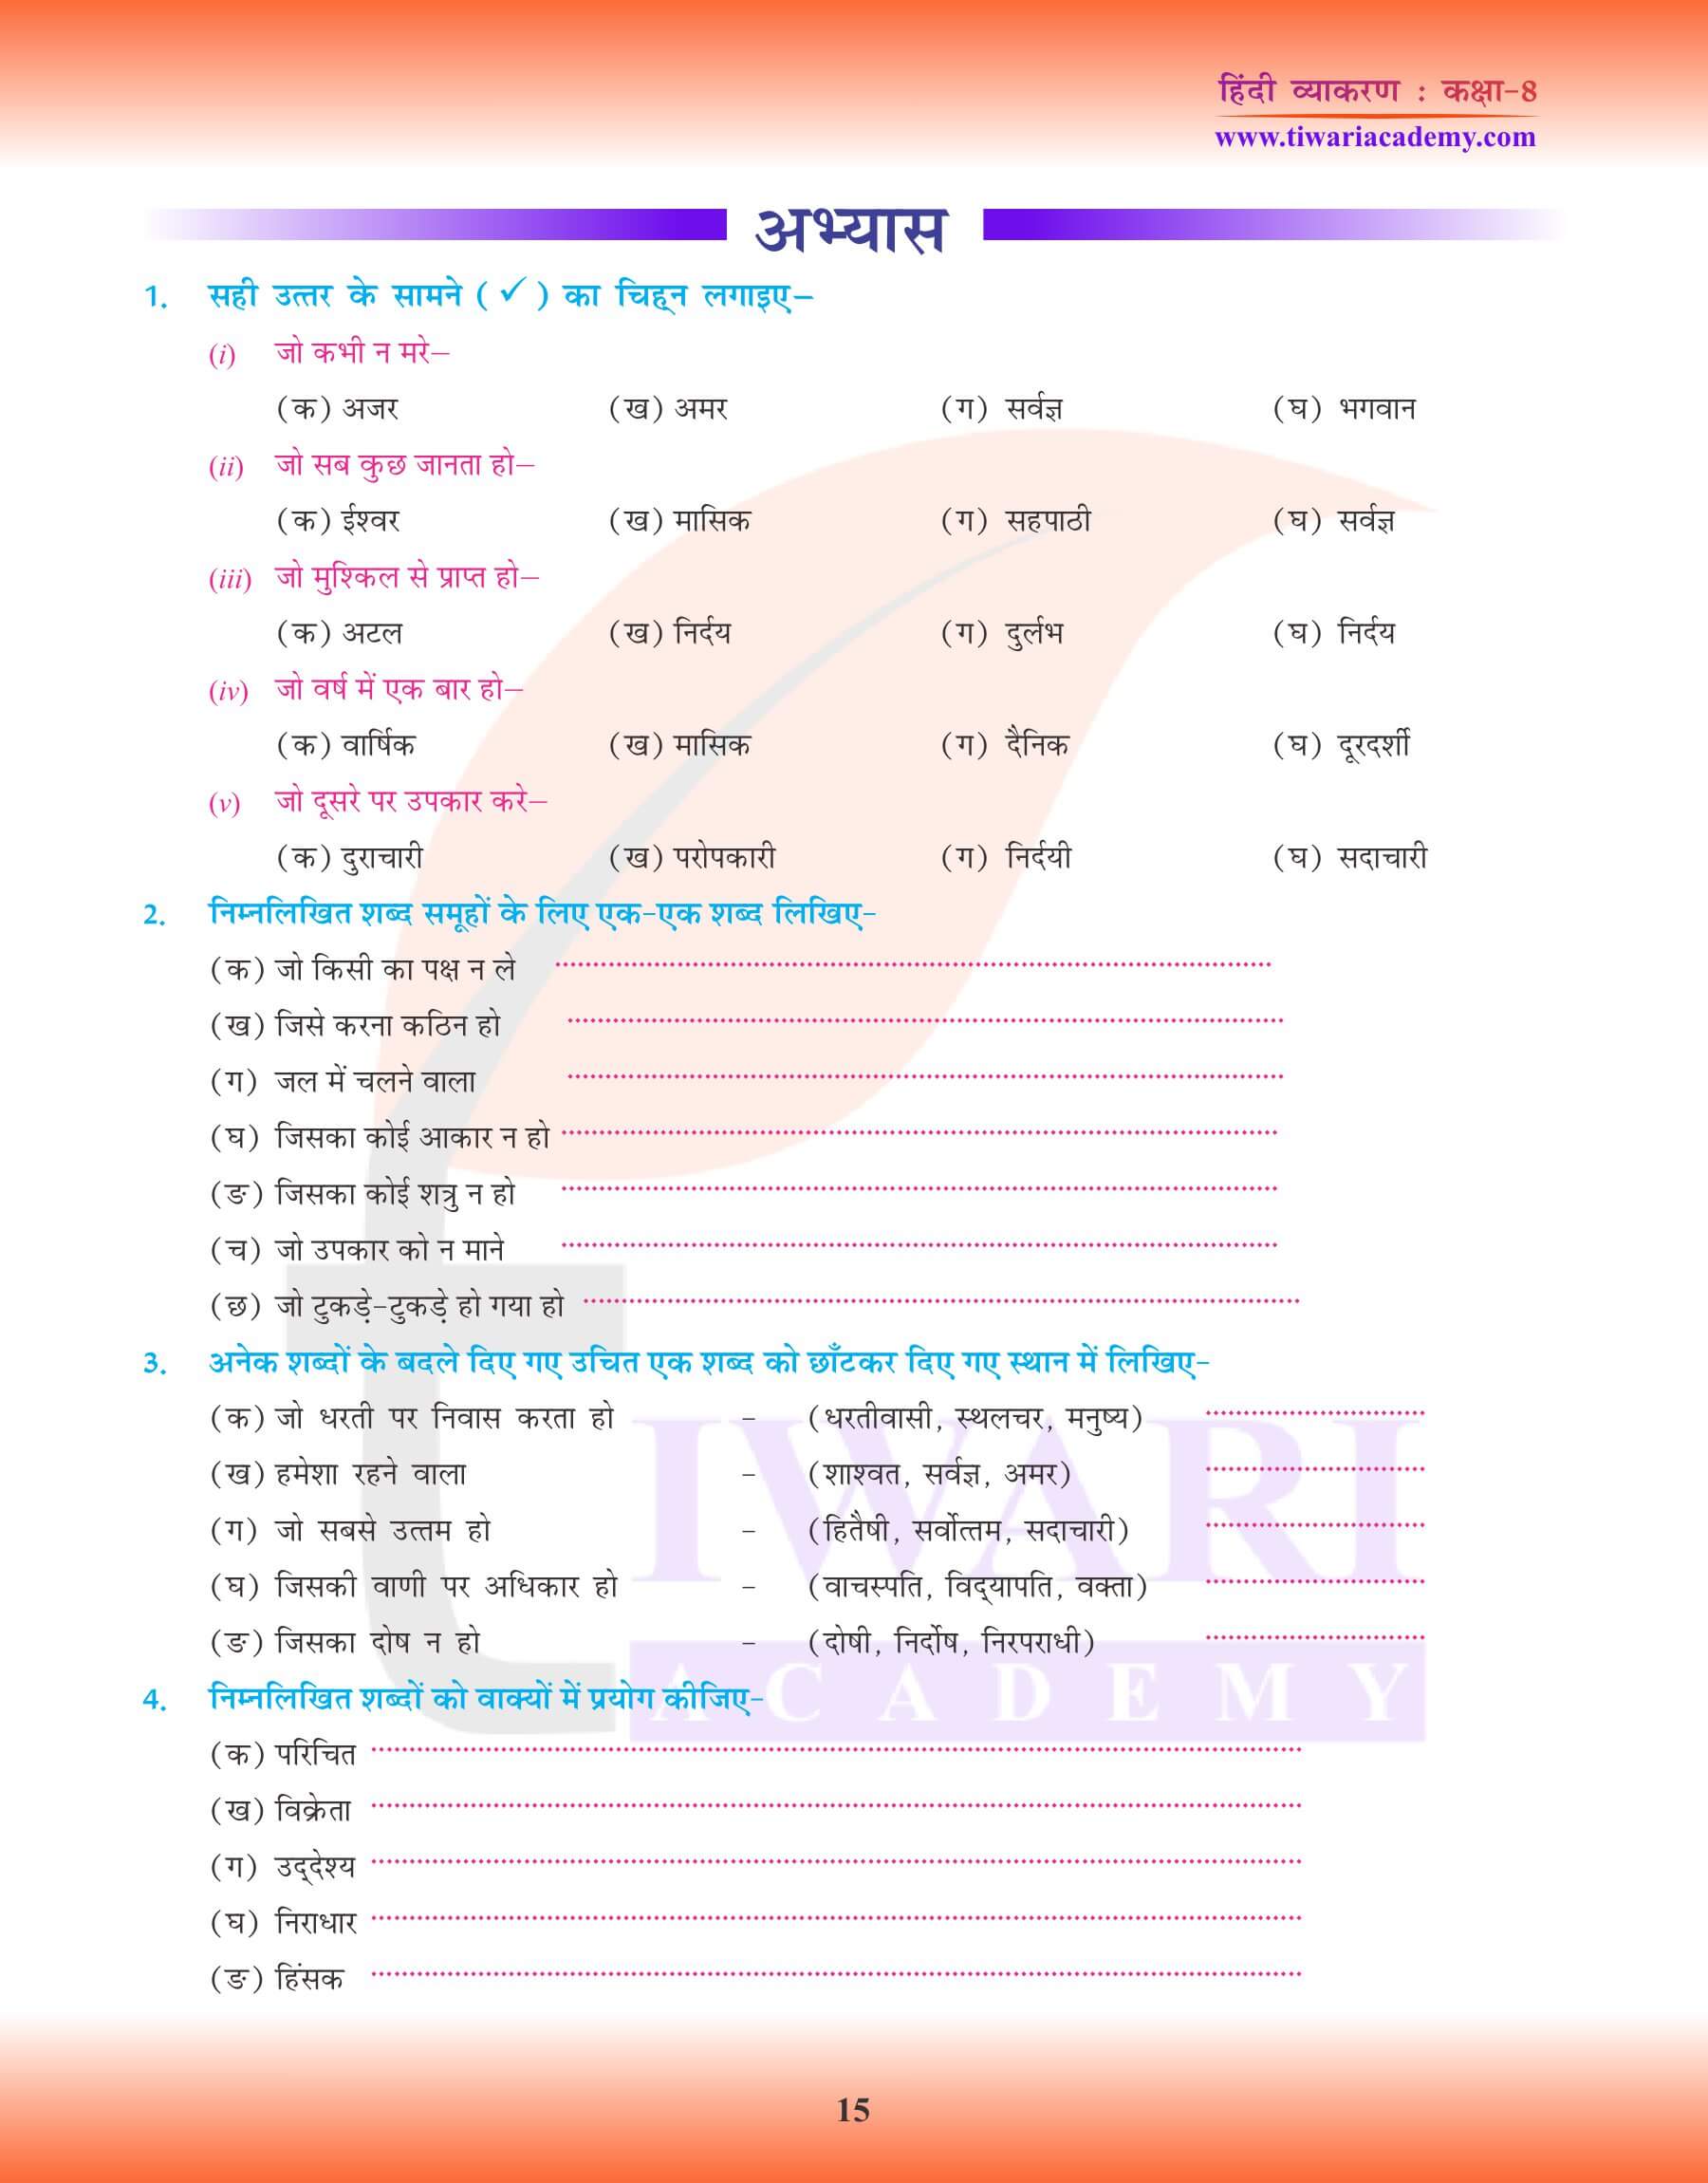 कक्षा 8 हिंदी व्याकरण में अनेक शब्दों के लिए एक शब्द अभ्यास